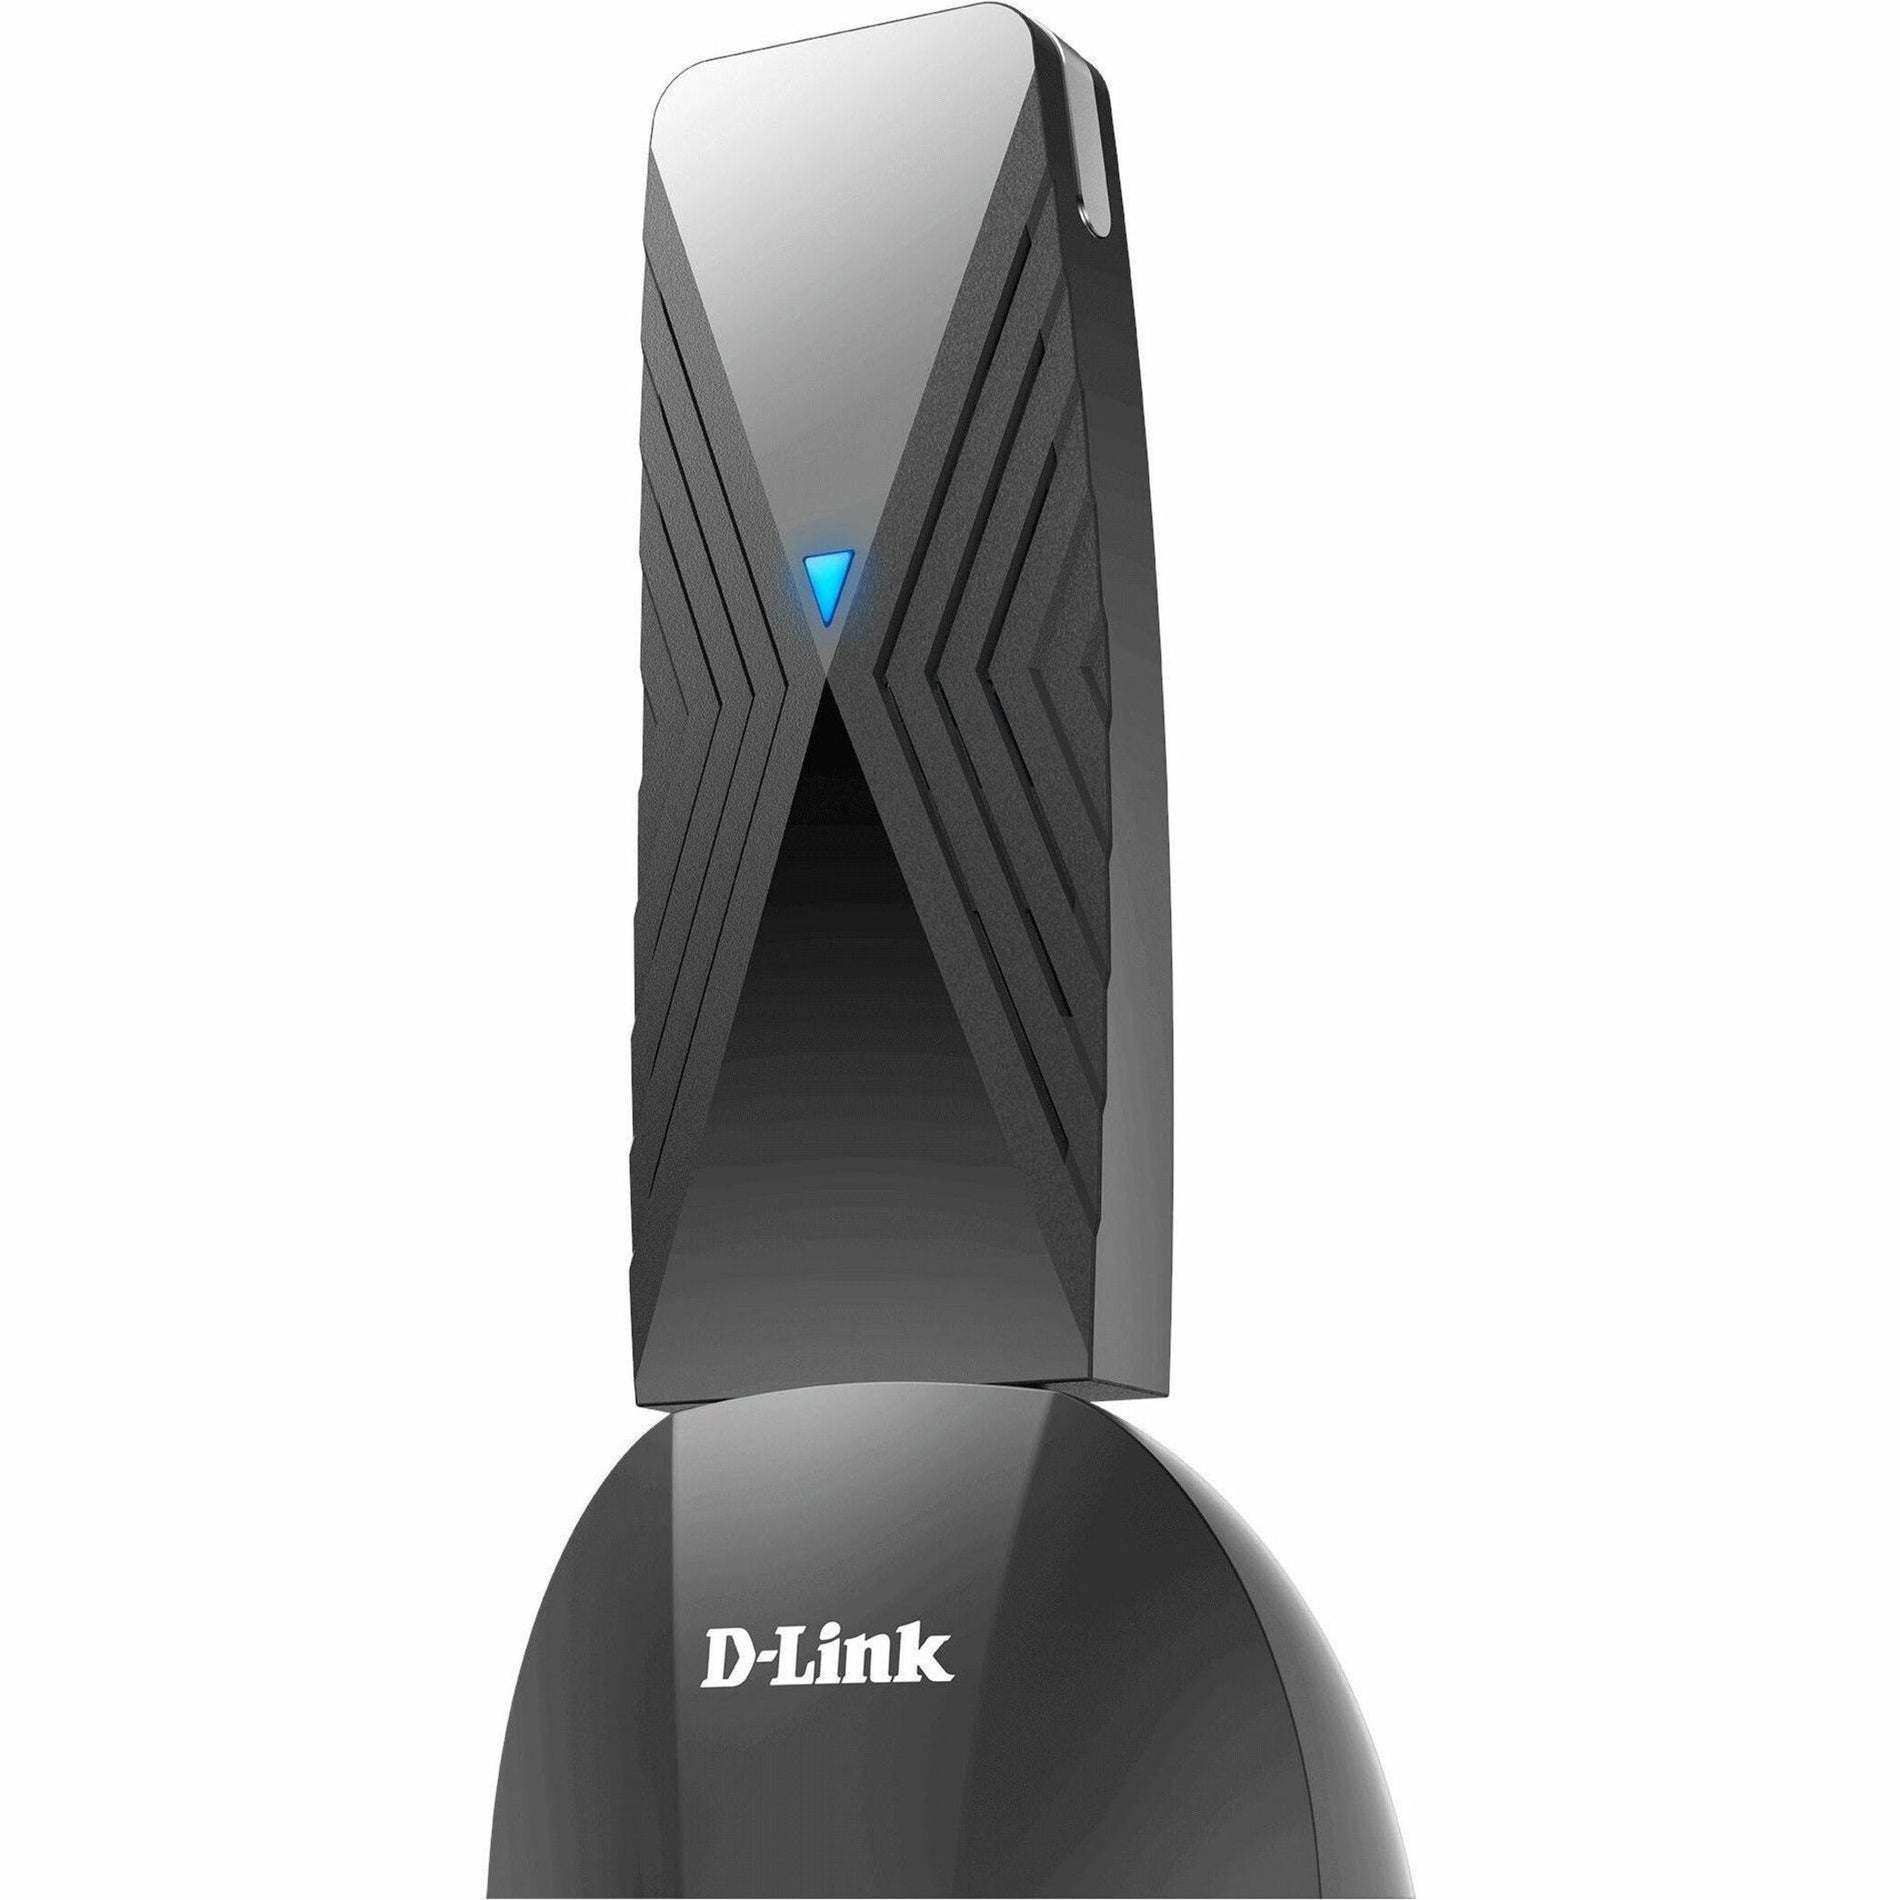 D-Link (DWAF18) Wireless NICs & Adapters (DWA-F18)